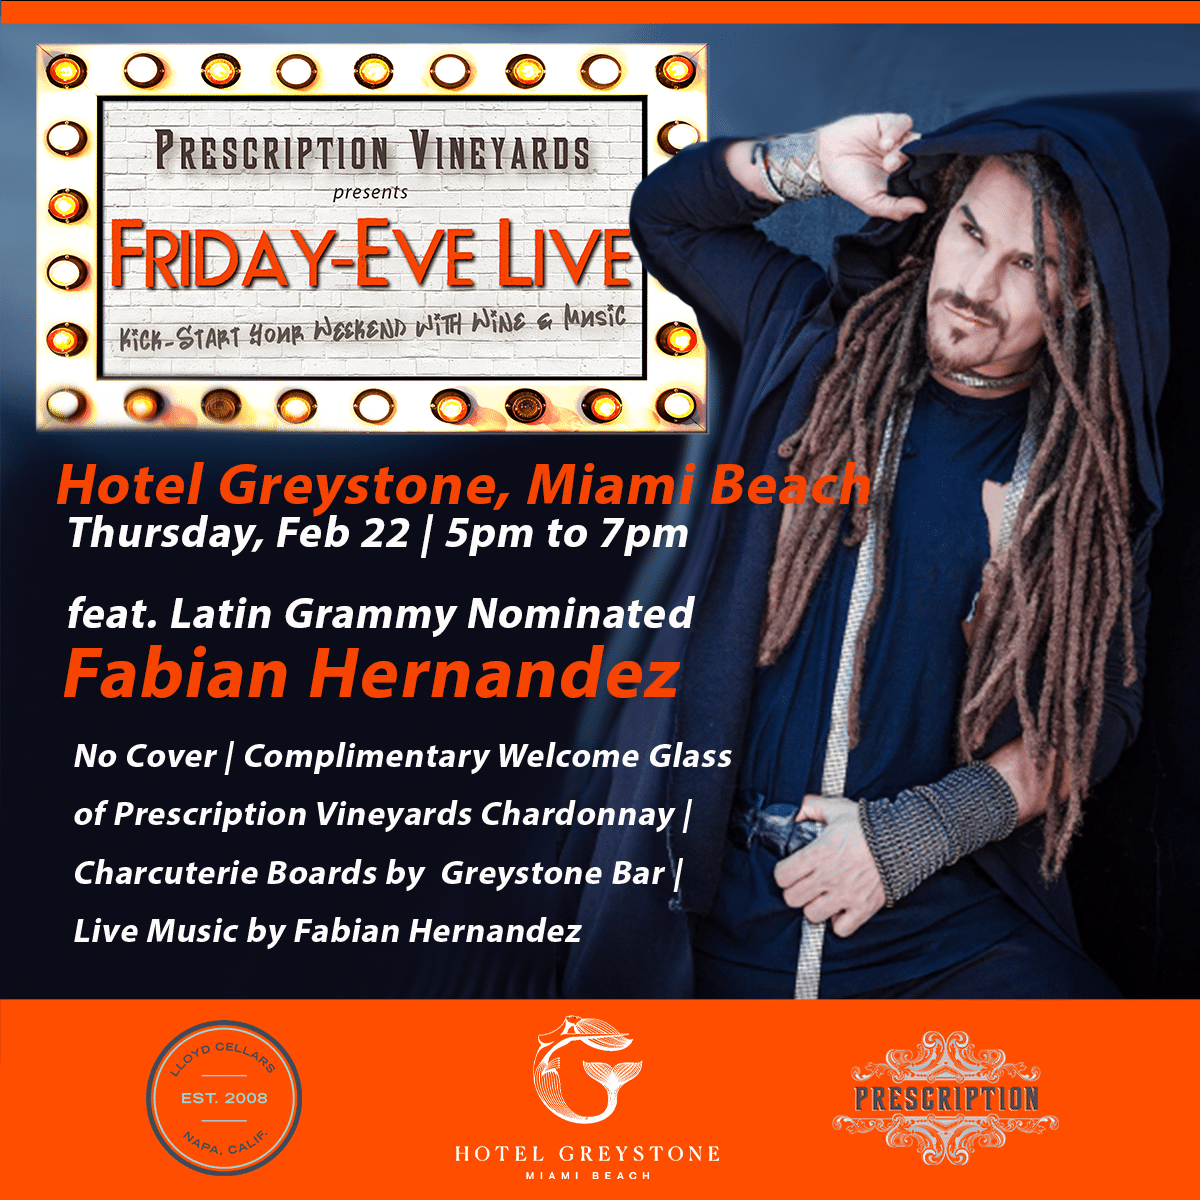 'Friday-Eve Live' at Hotel Greystone, Miami Beach